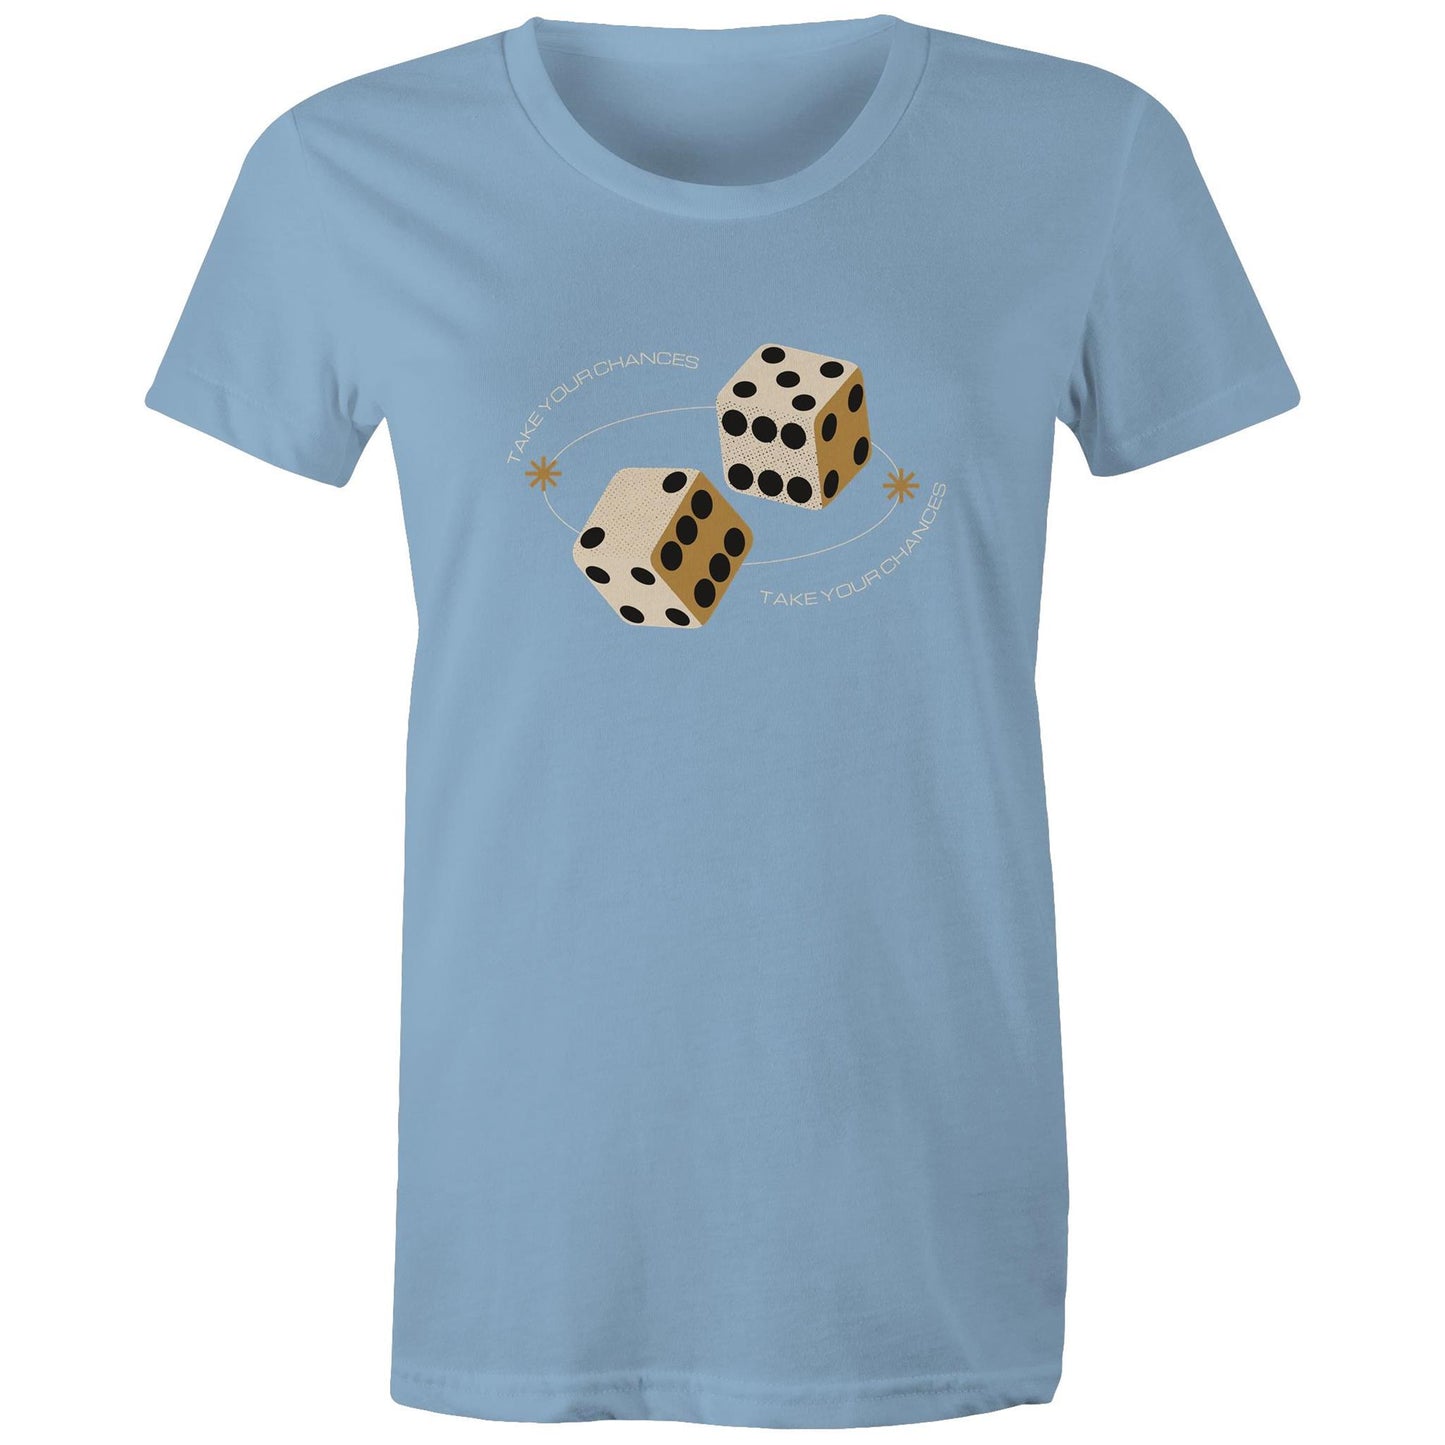 Dice, Take Your Chances - Womens T-shirt Carolina Blue Womens T-shirt Games